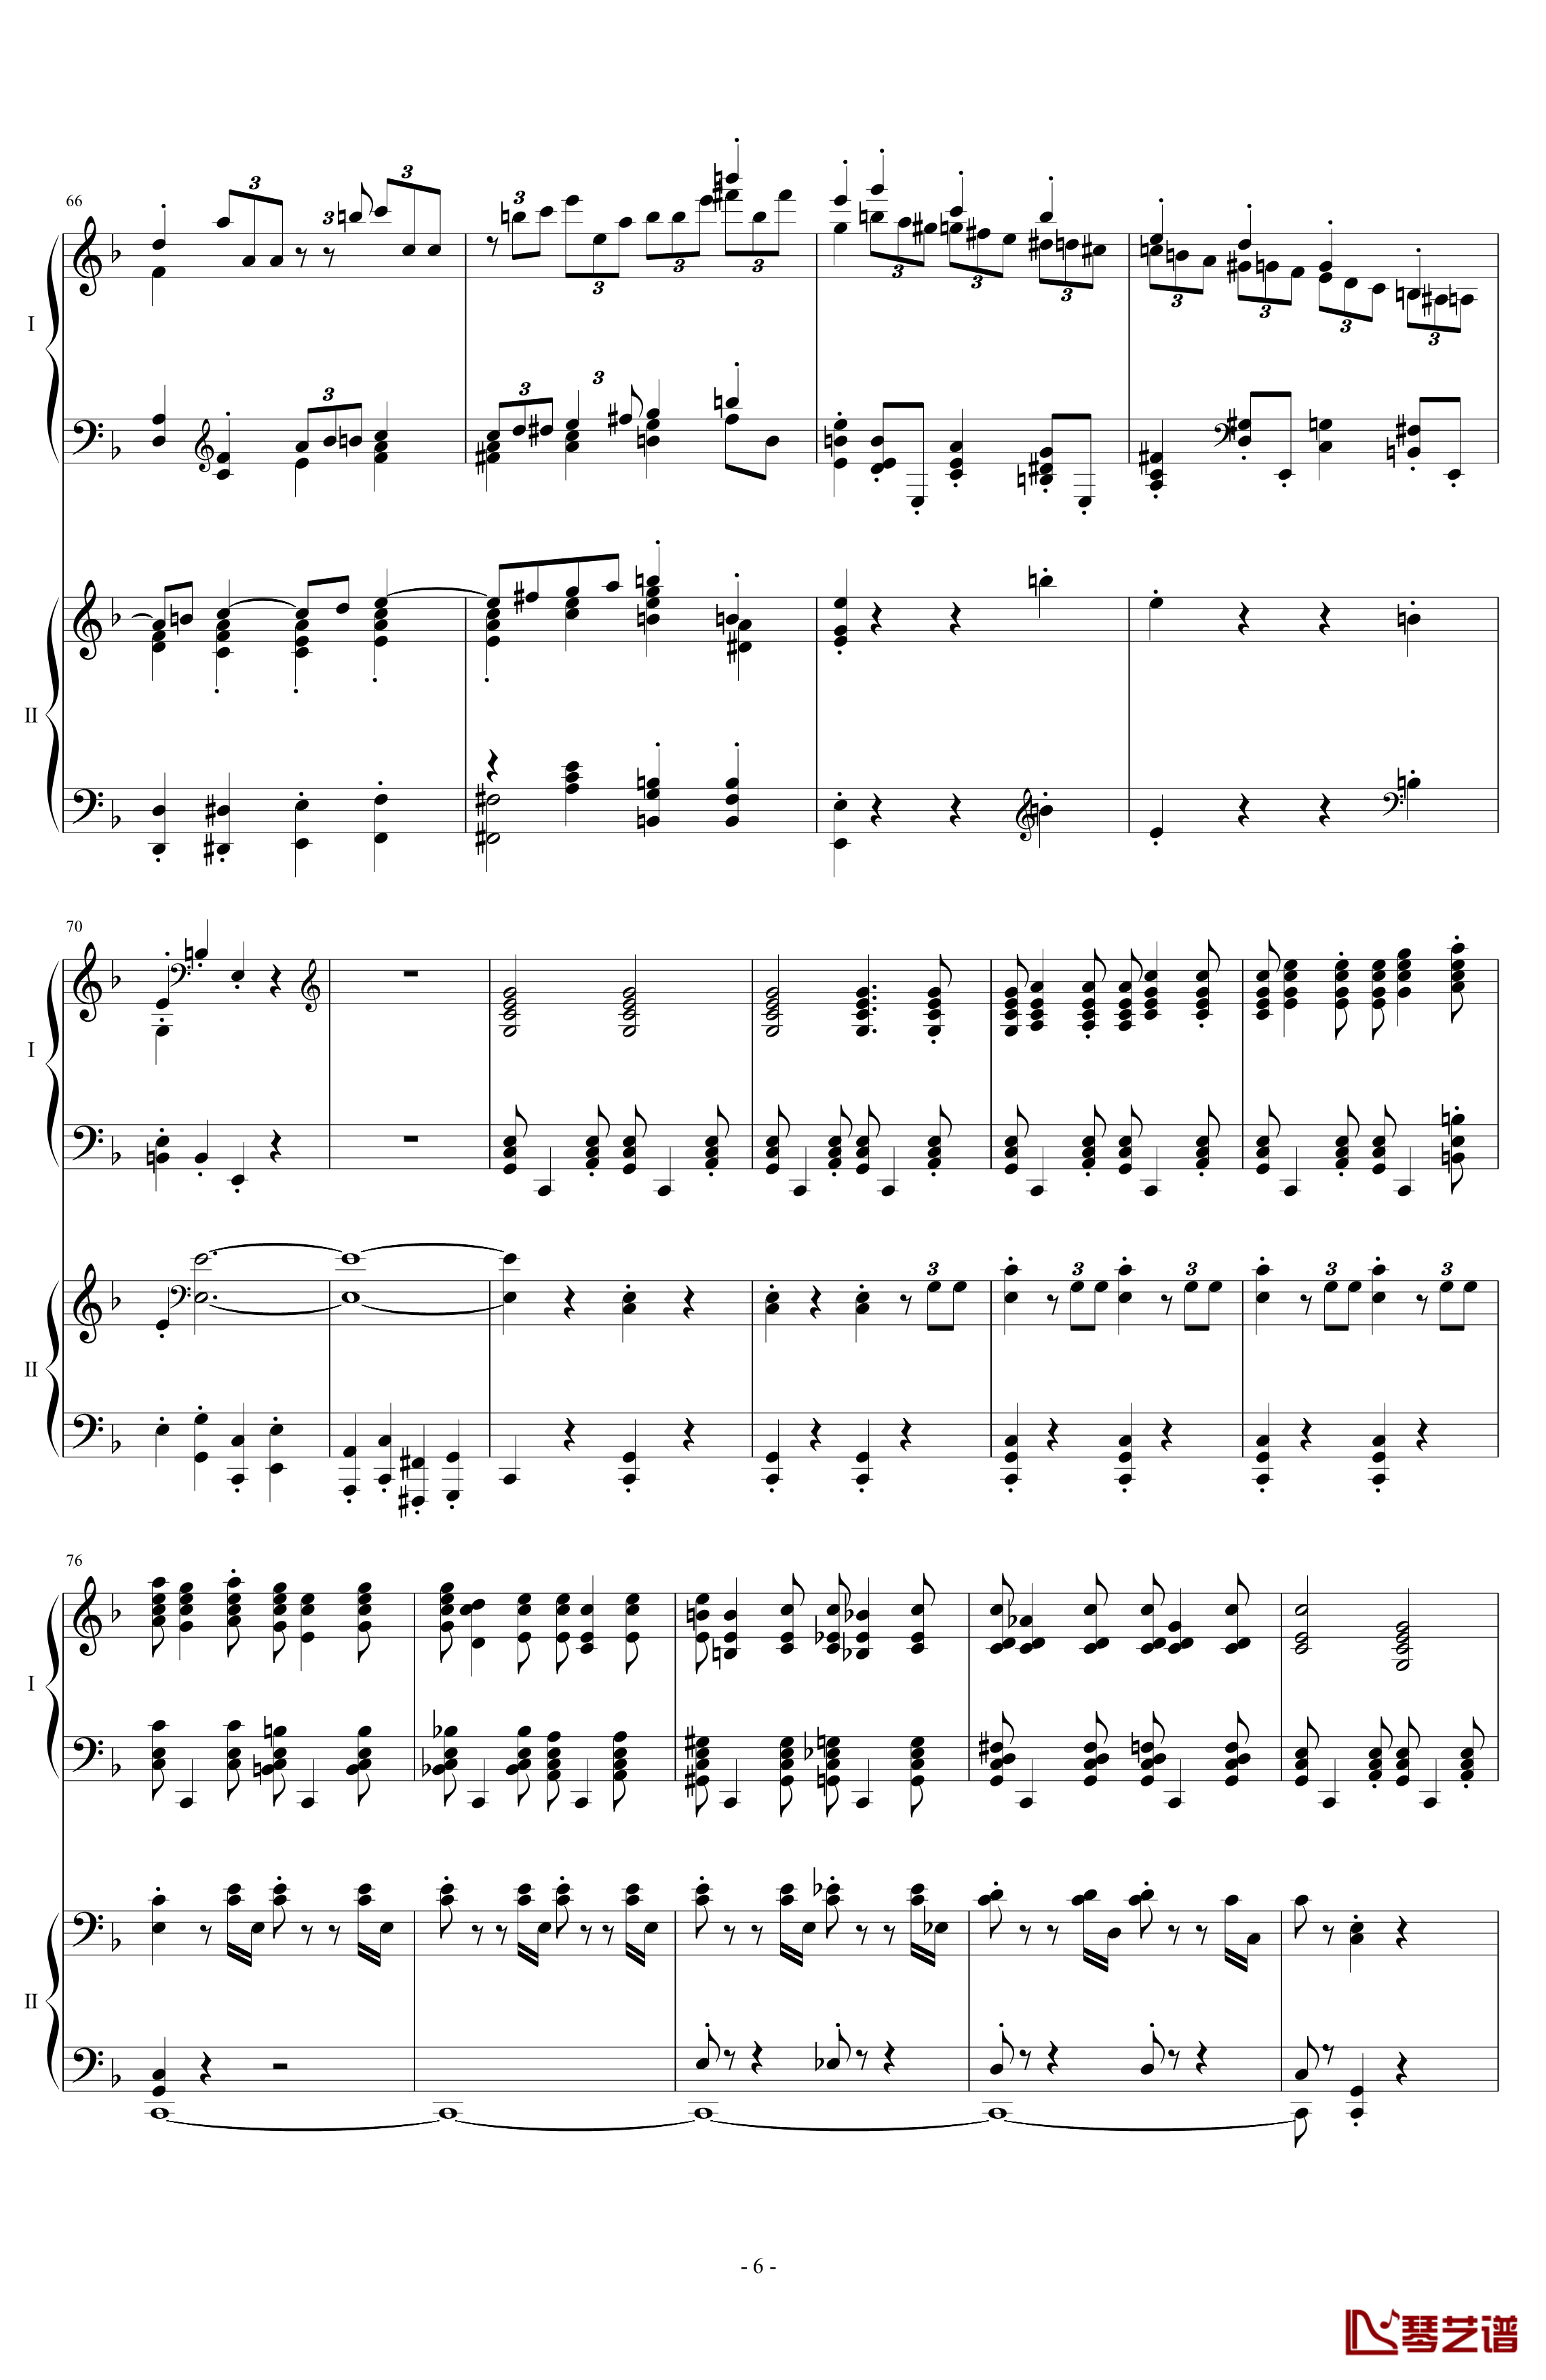 拉三第三乐章41页双钢琴钢琴谱-最难钢琴曲-拉赫马尼若夫6